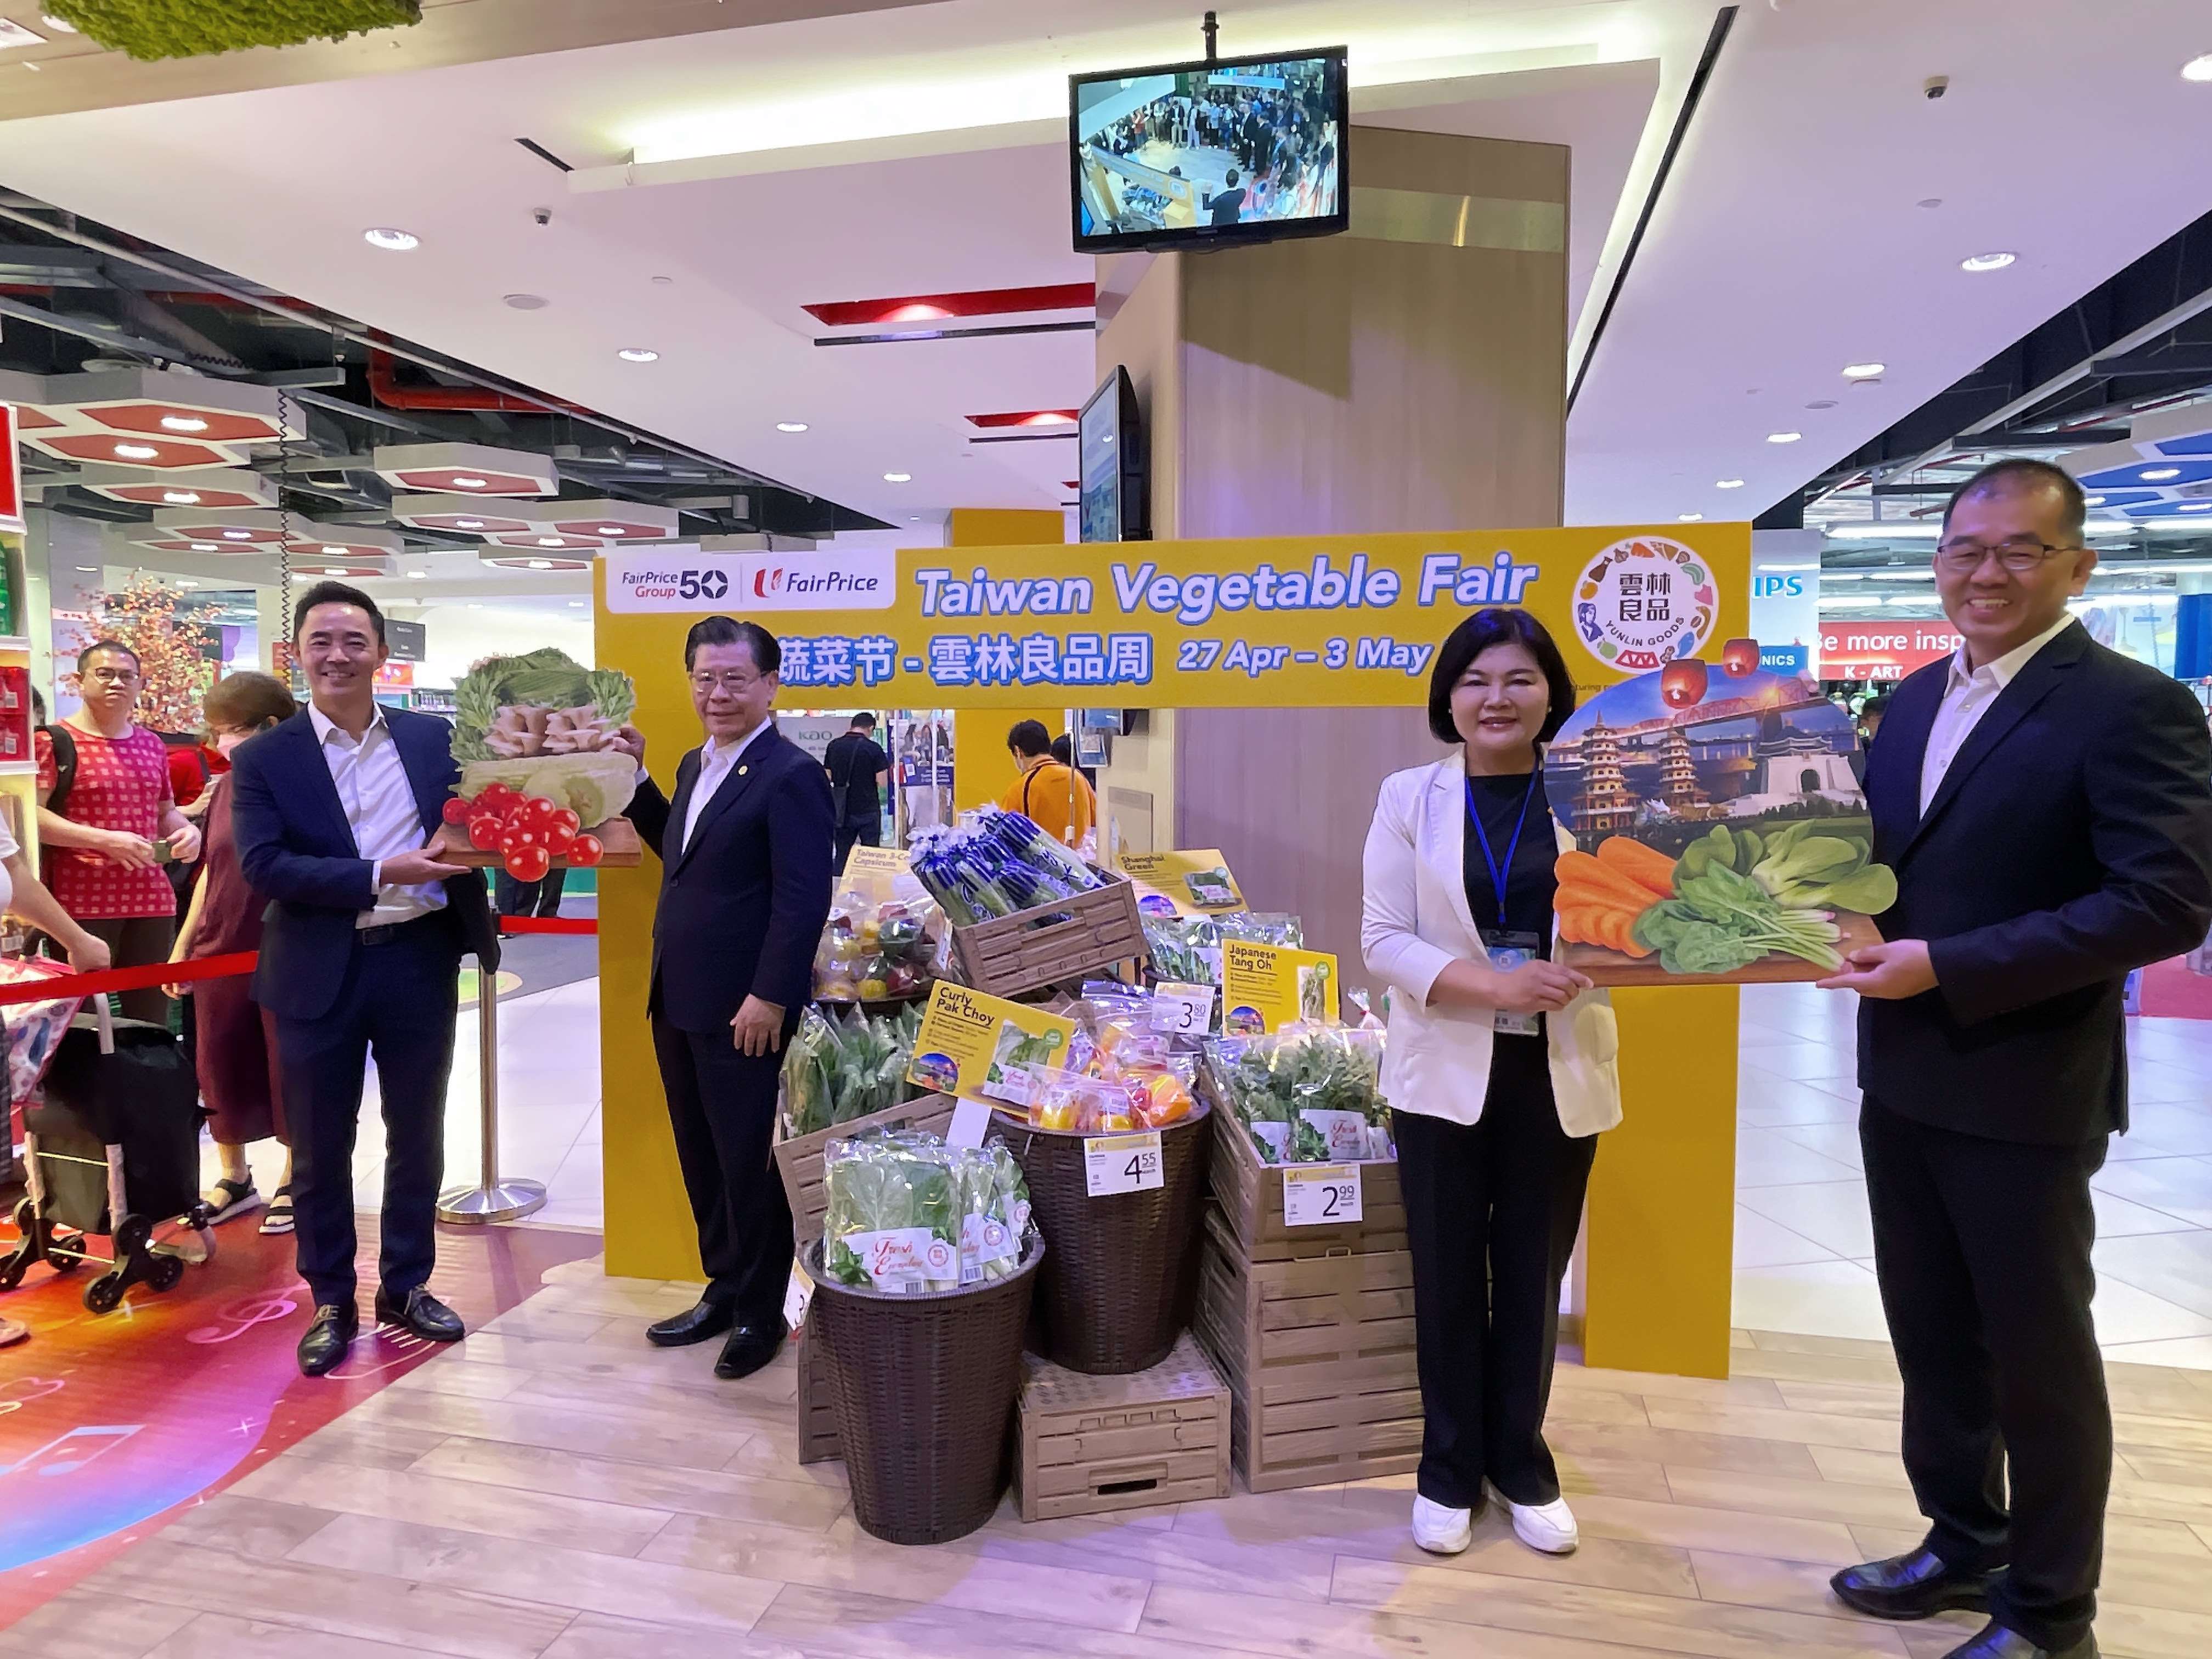 雲林農產新加坡上場  台灣蔬菜節-雲林良品週發揚國際